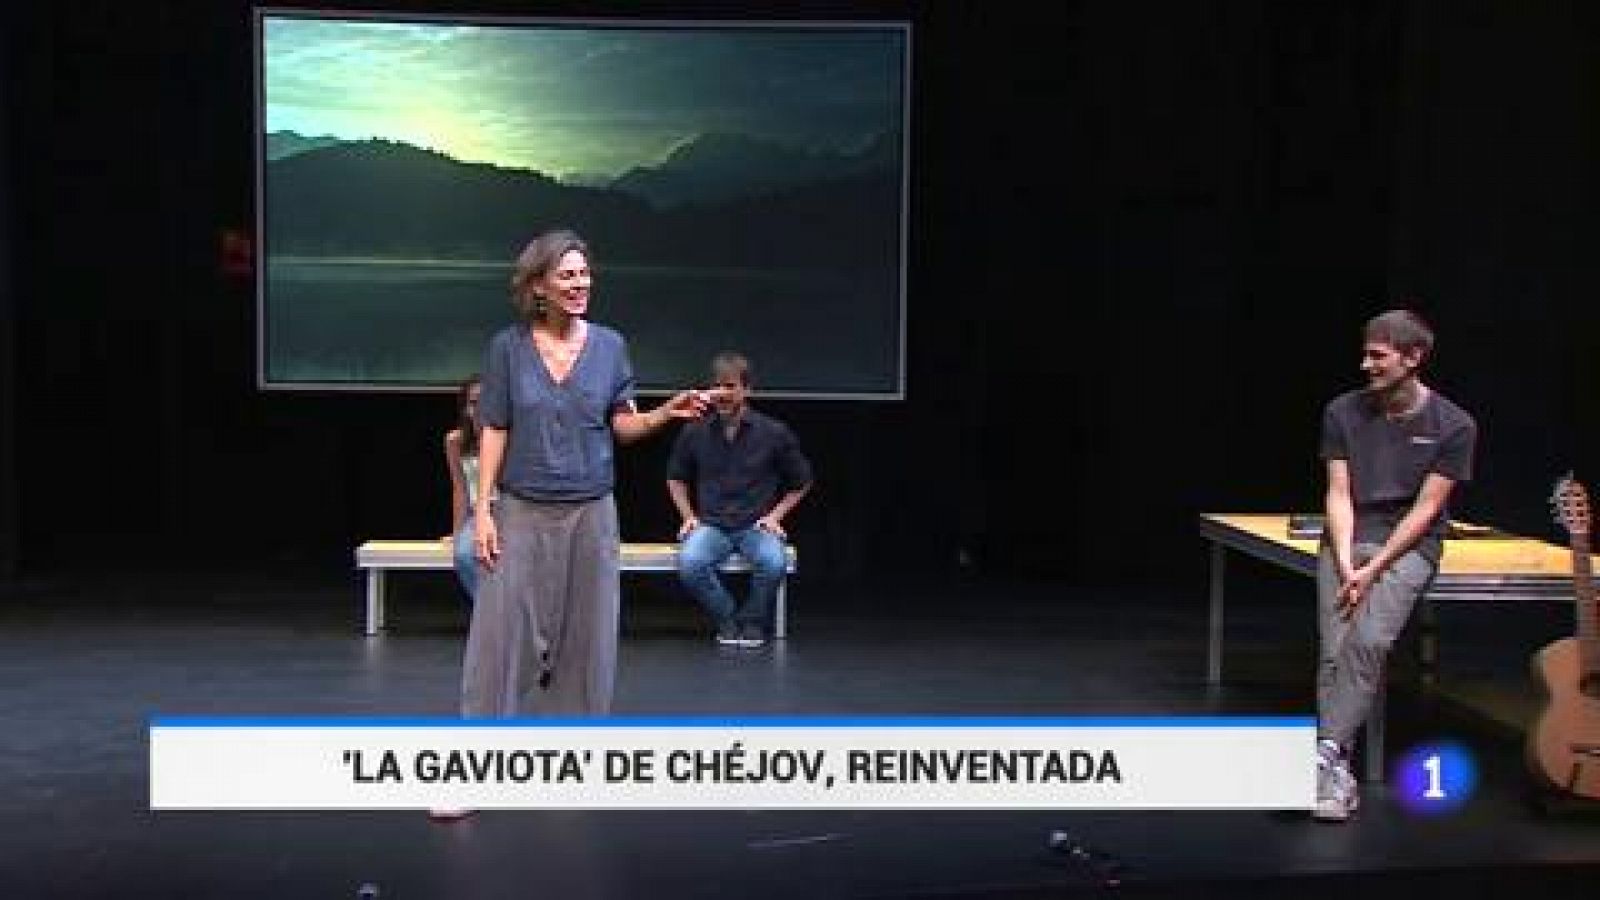 El Teatro de la Abadía reabre csus puertas con una versión libre de 'La gaviota', de Chéjov